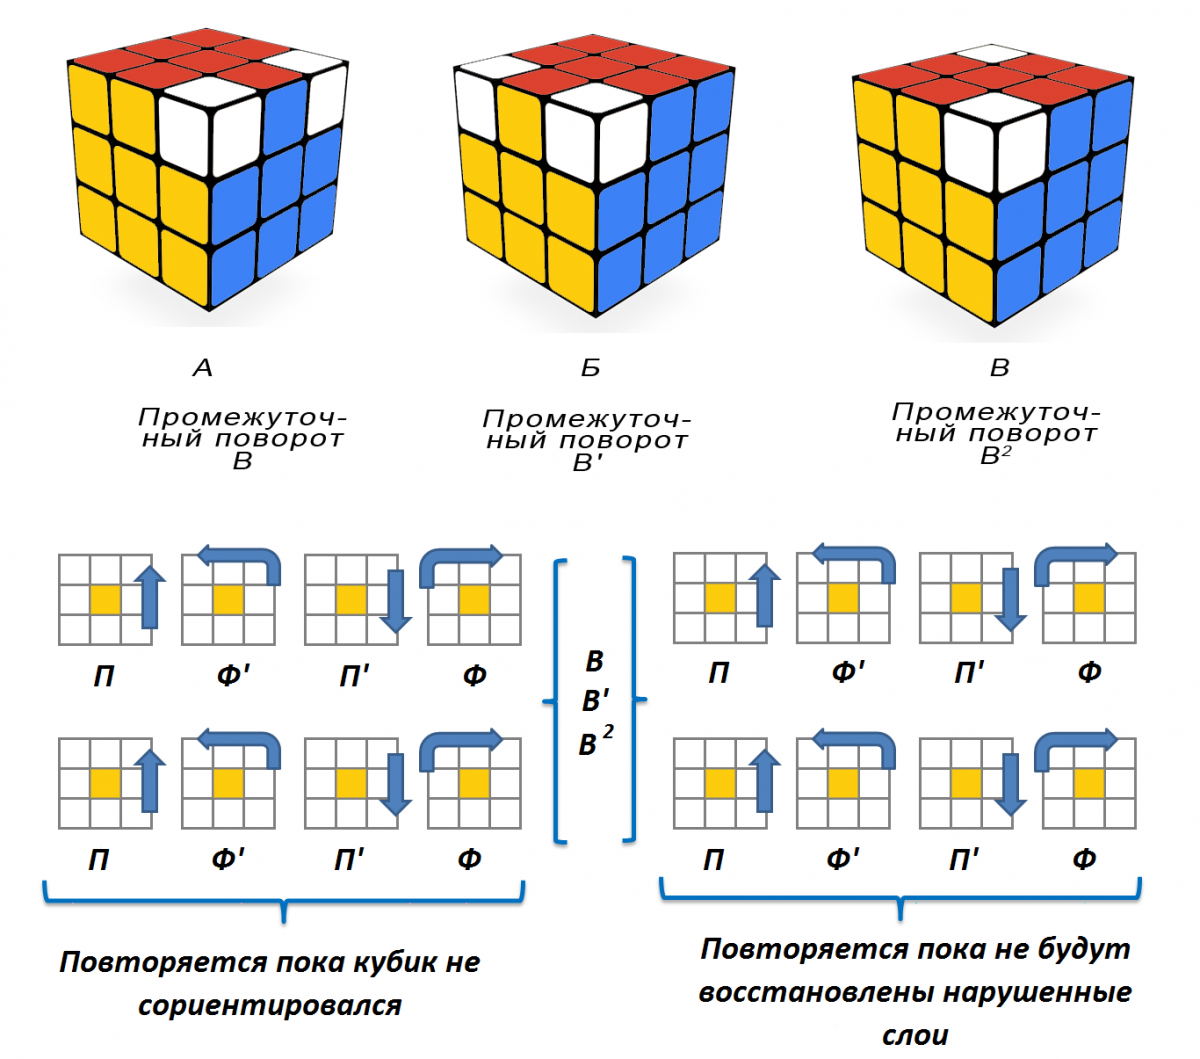 Собирайте Кубик Рубик в различных геометрических формах и удивляйте всех